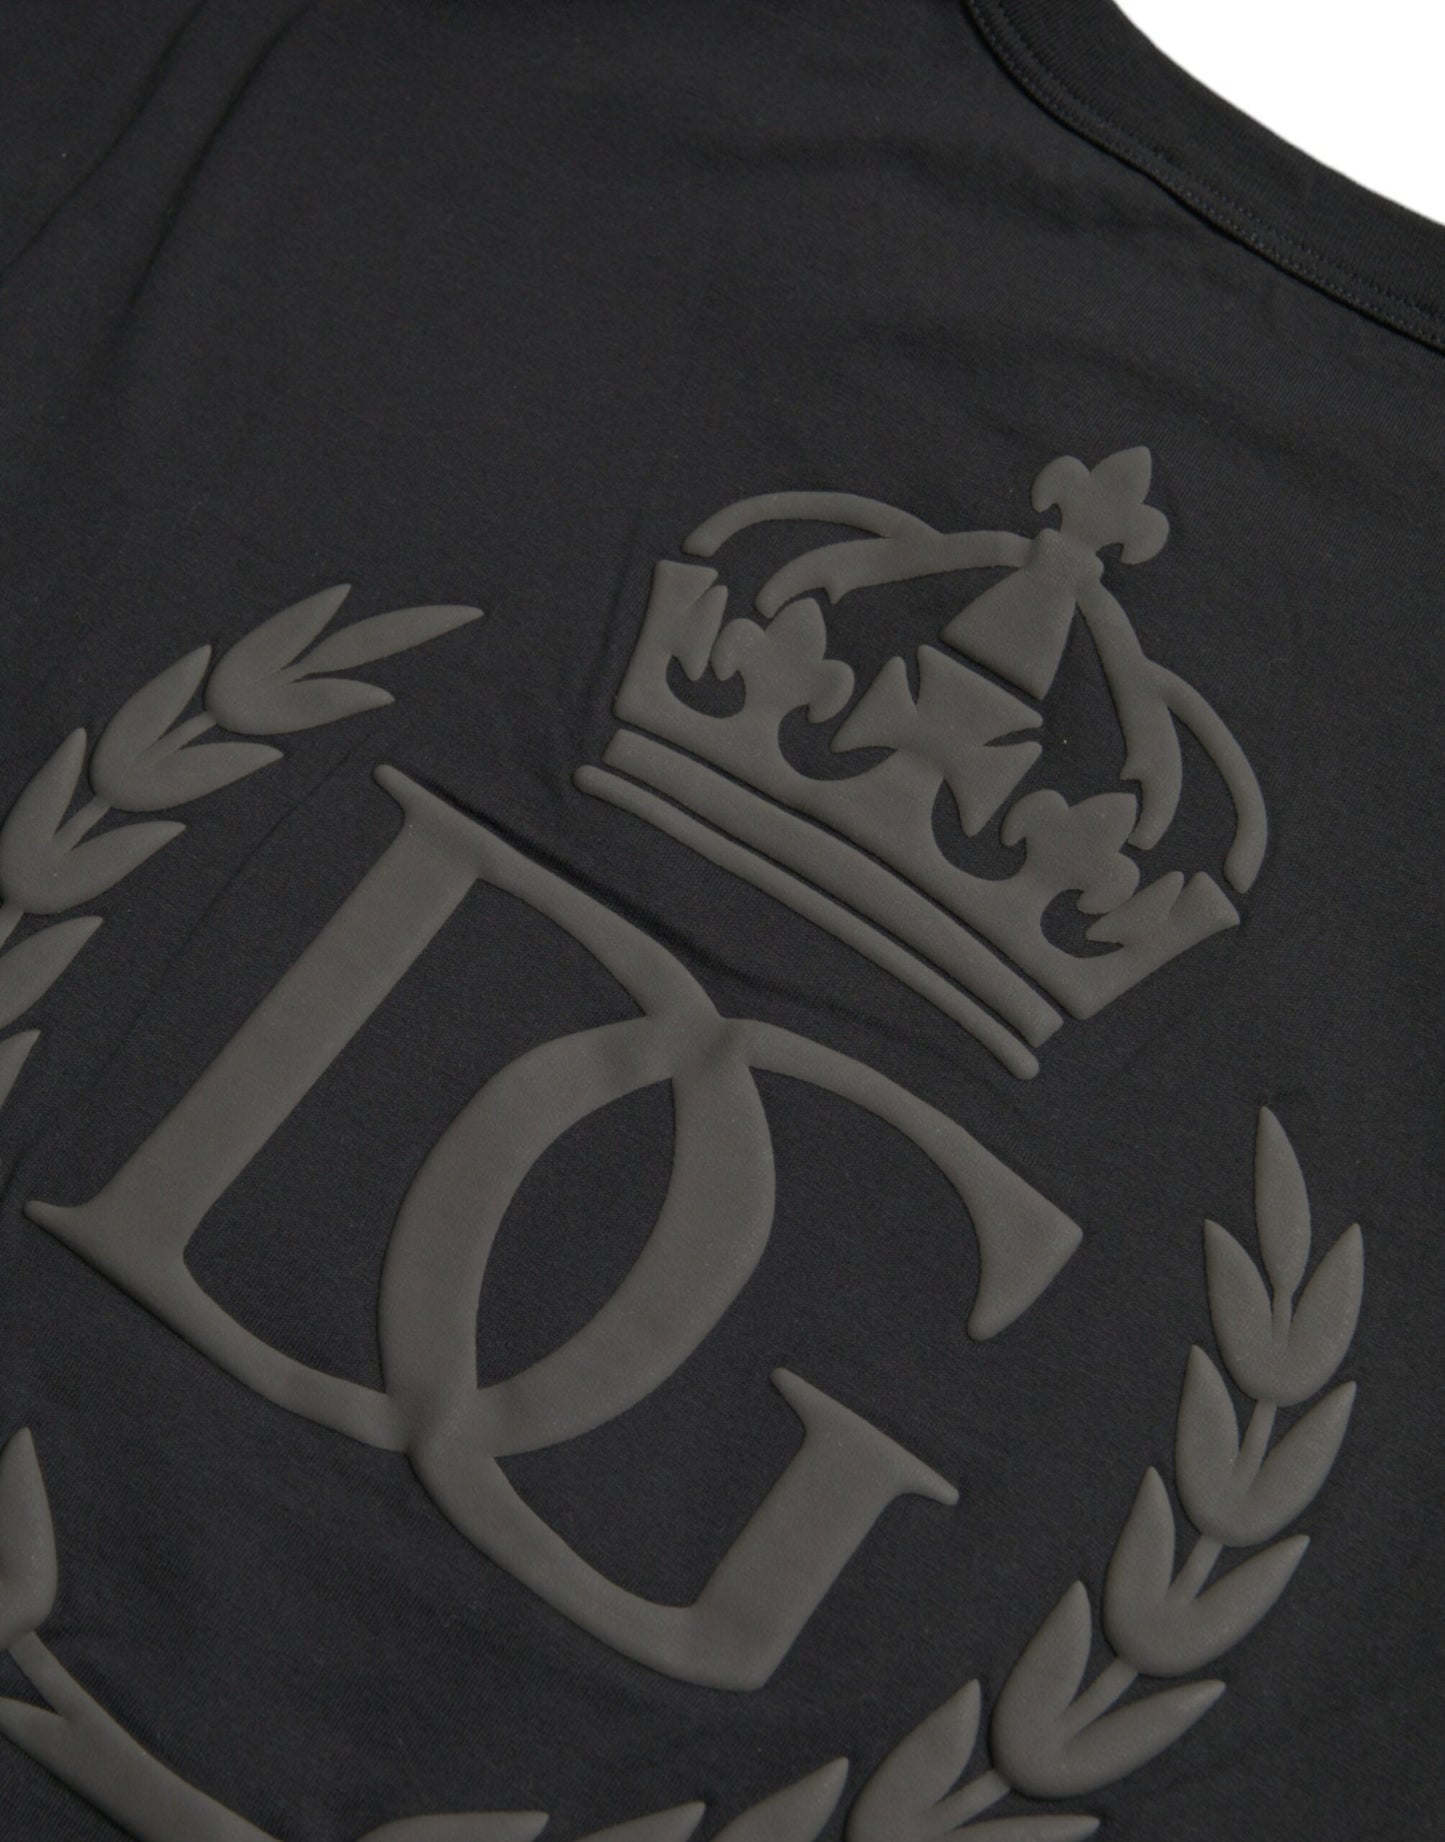 Dolce & Gabbana Black Logo Embossed Crew Neck Short Sleeves T-shirt